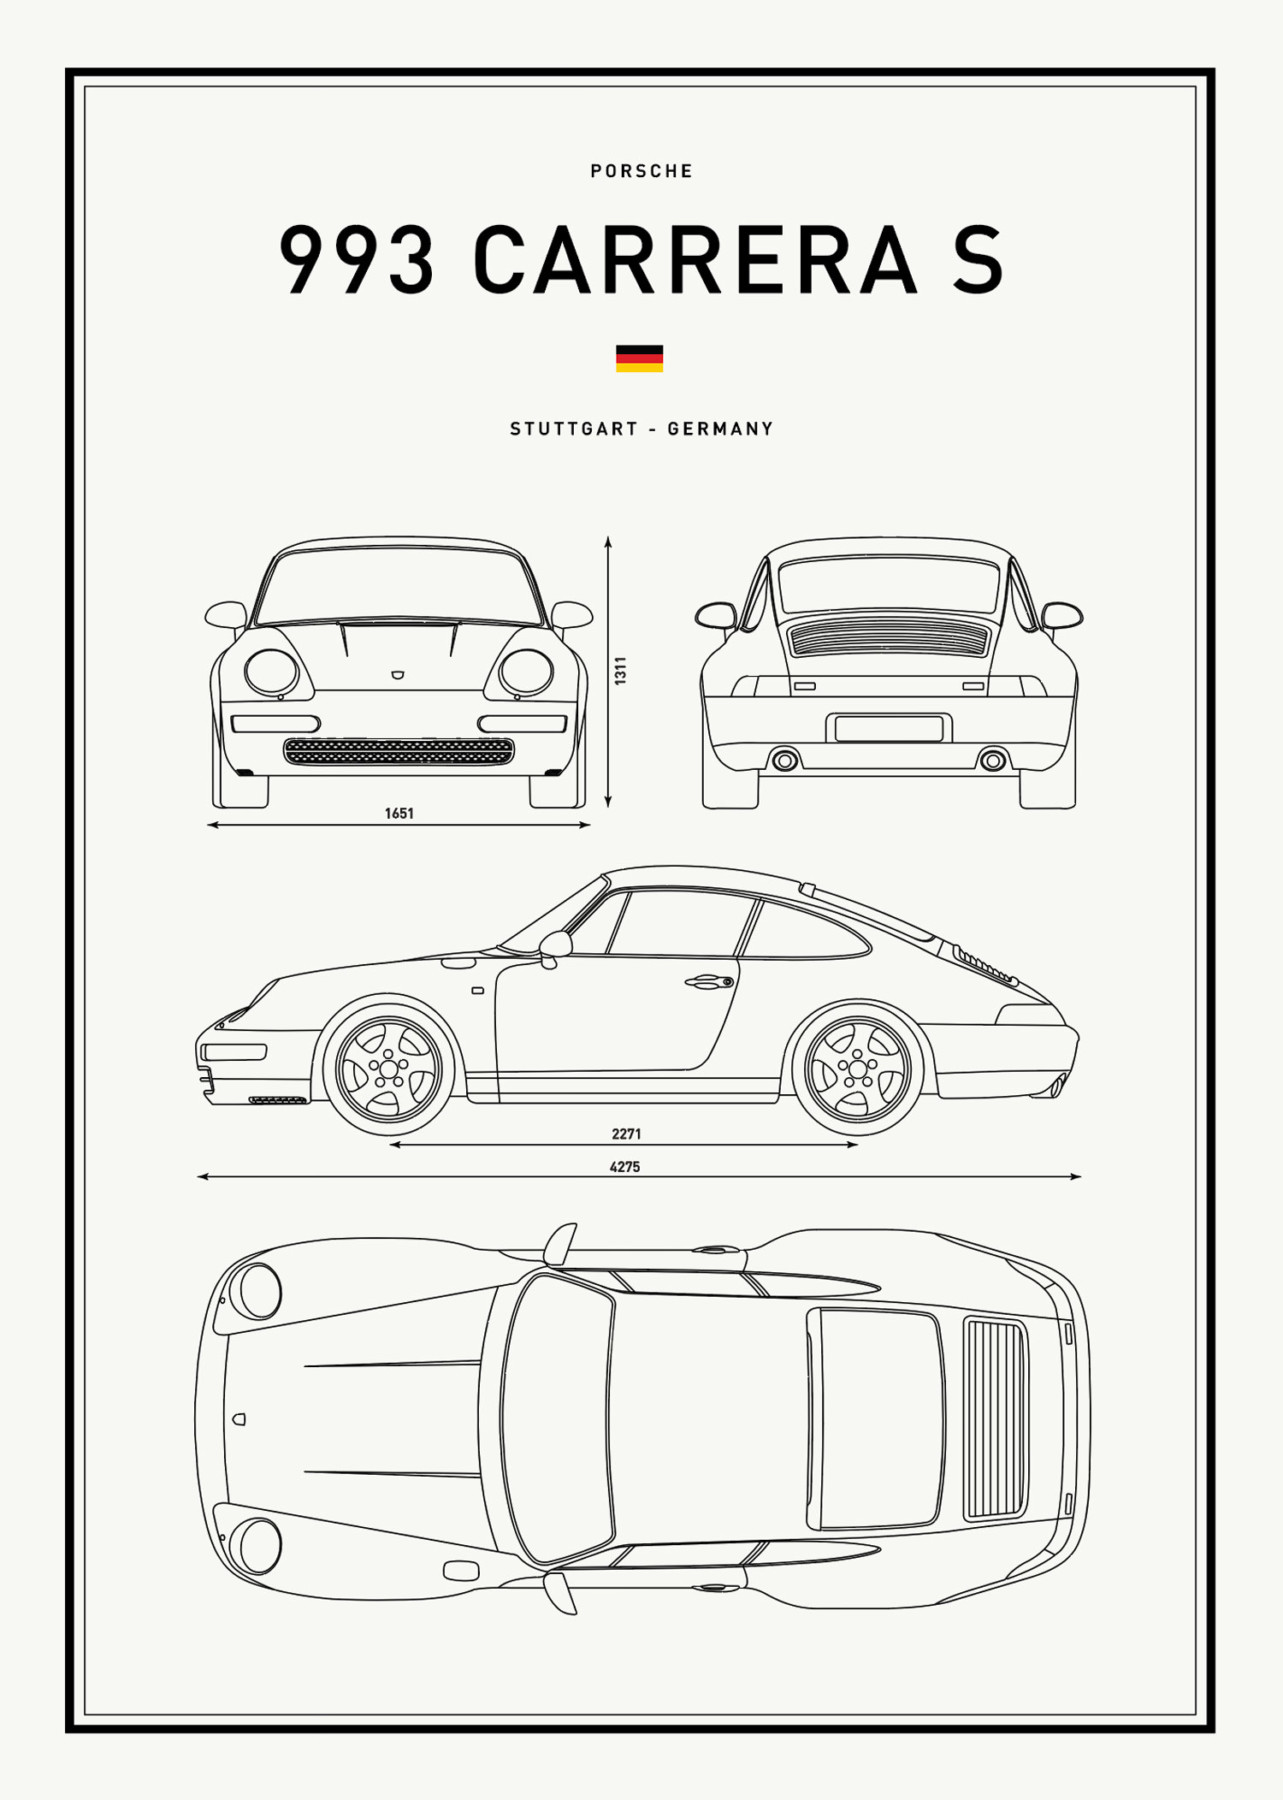 Porsche-993CarreraS